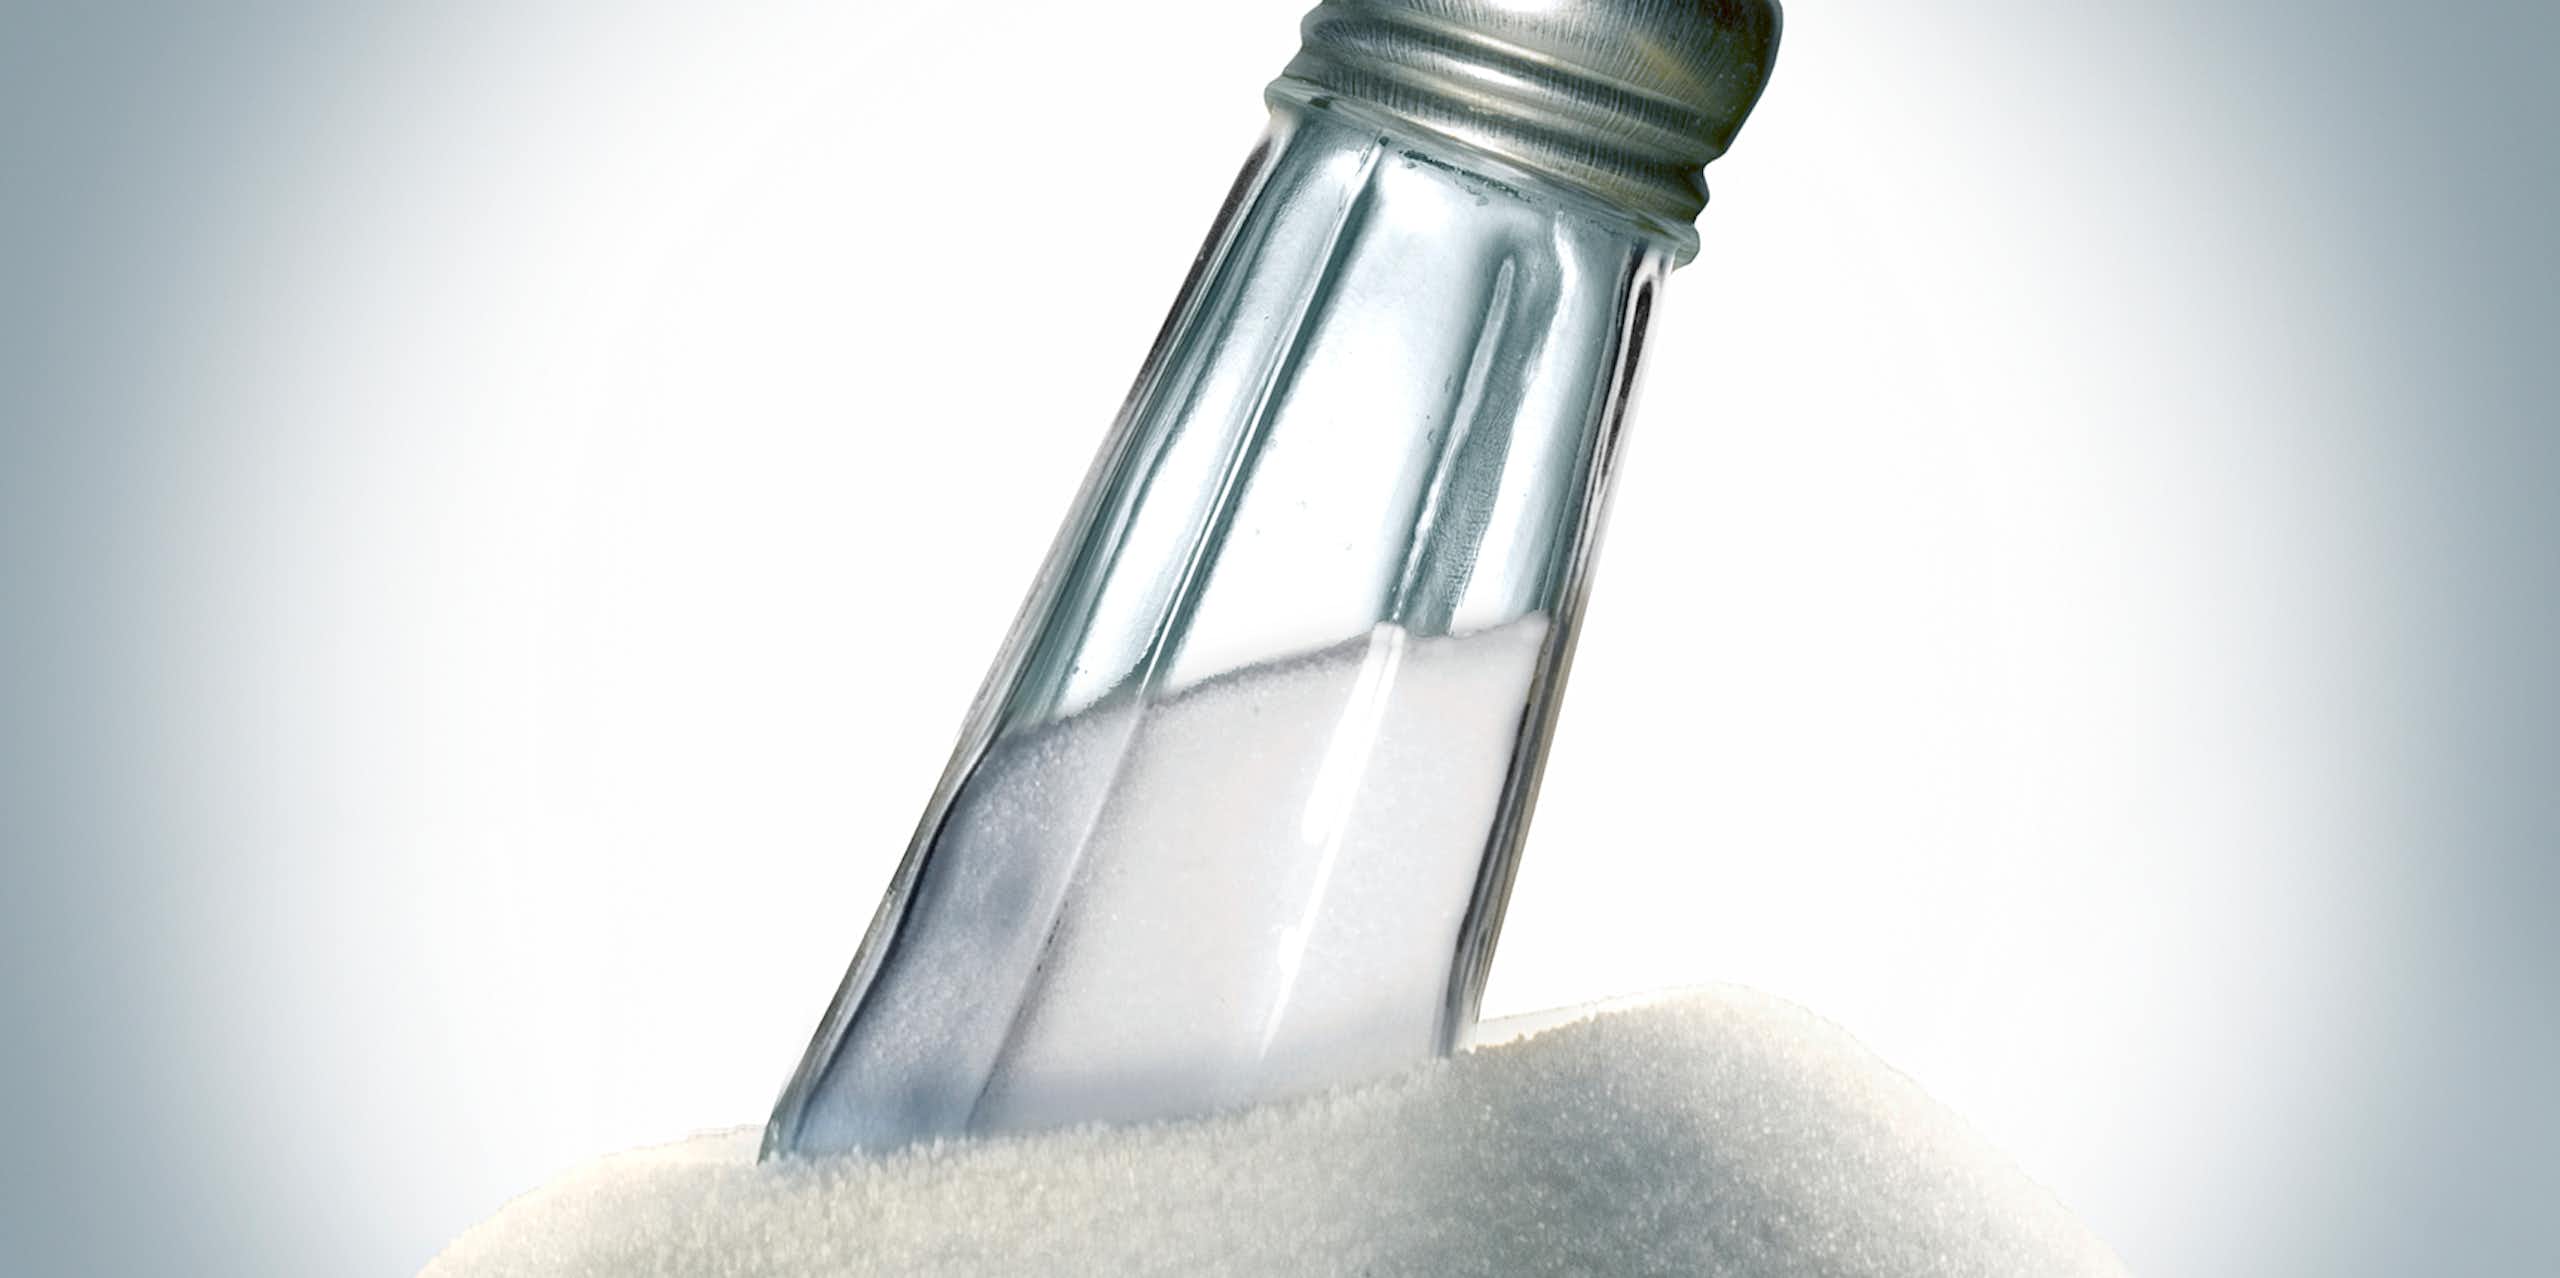 Salt shaker embedded in a large pile of salt